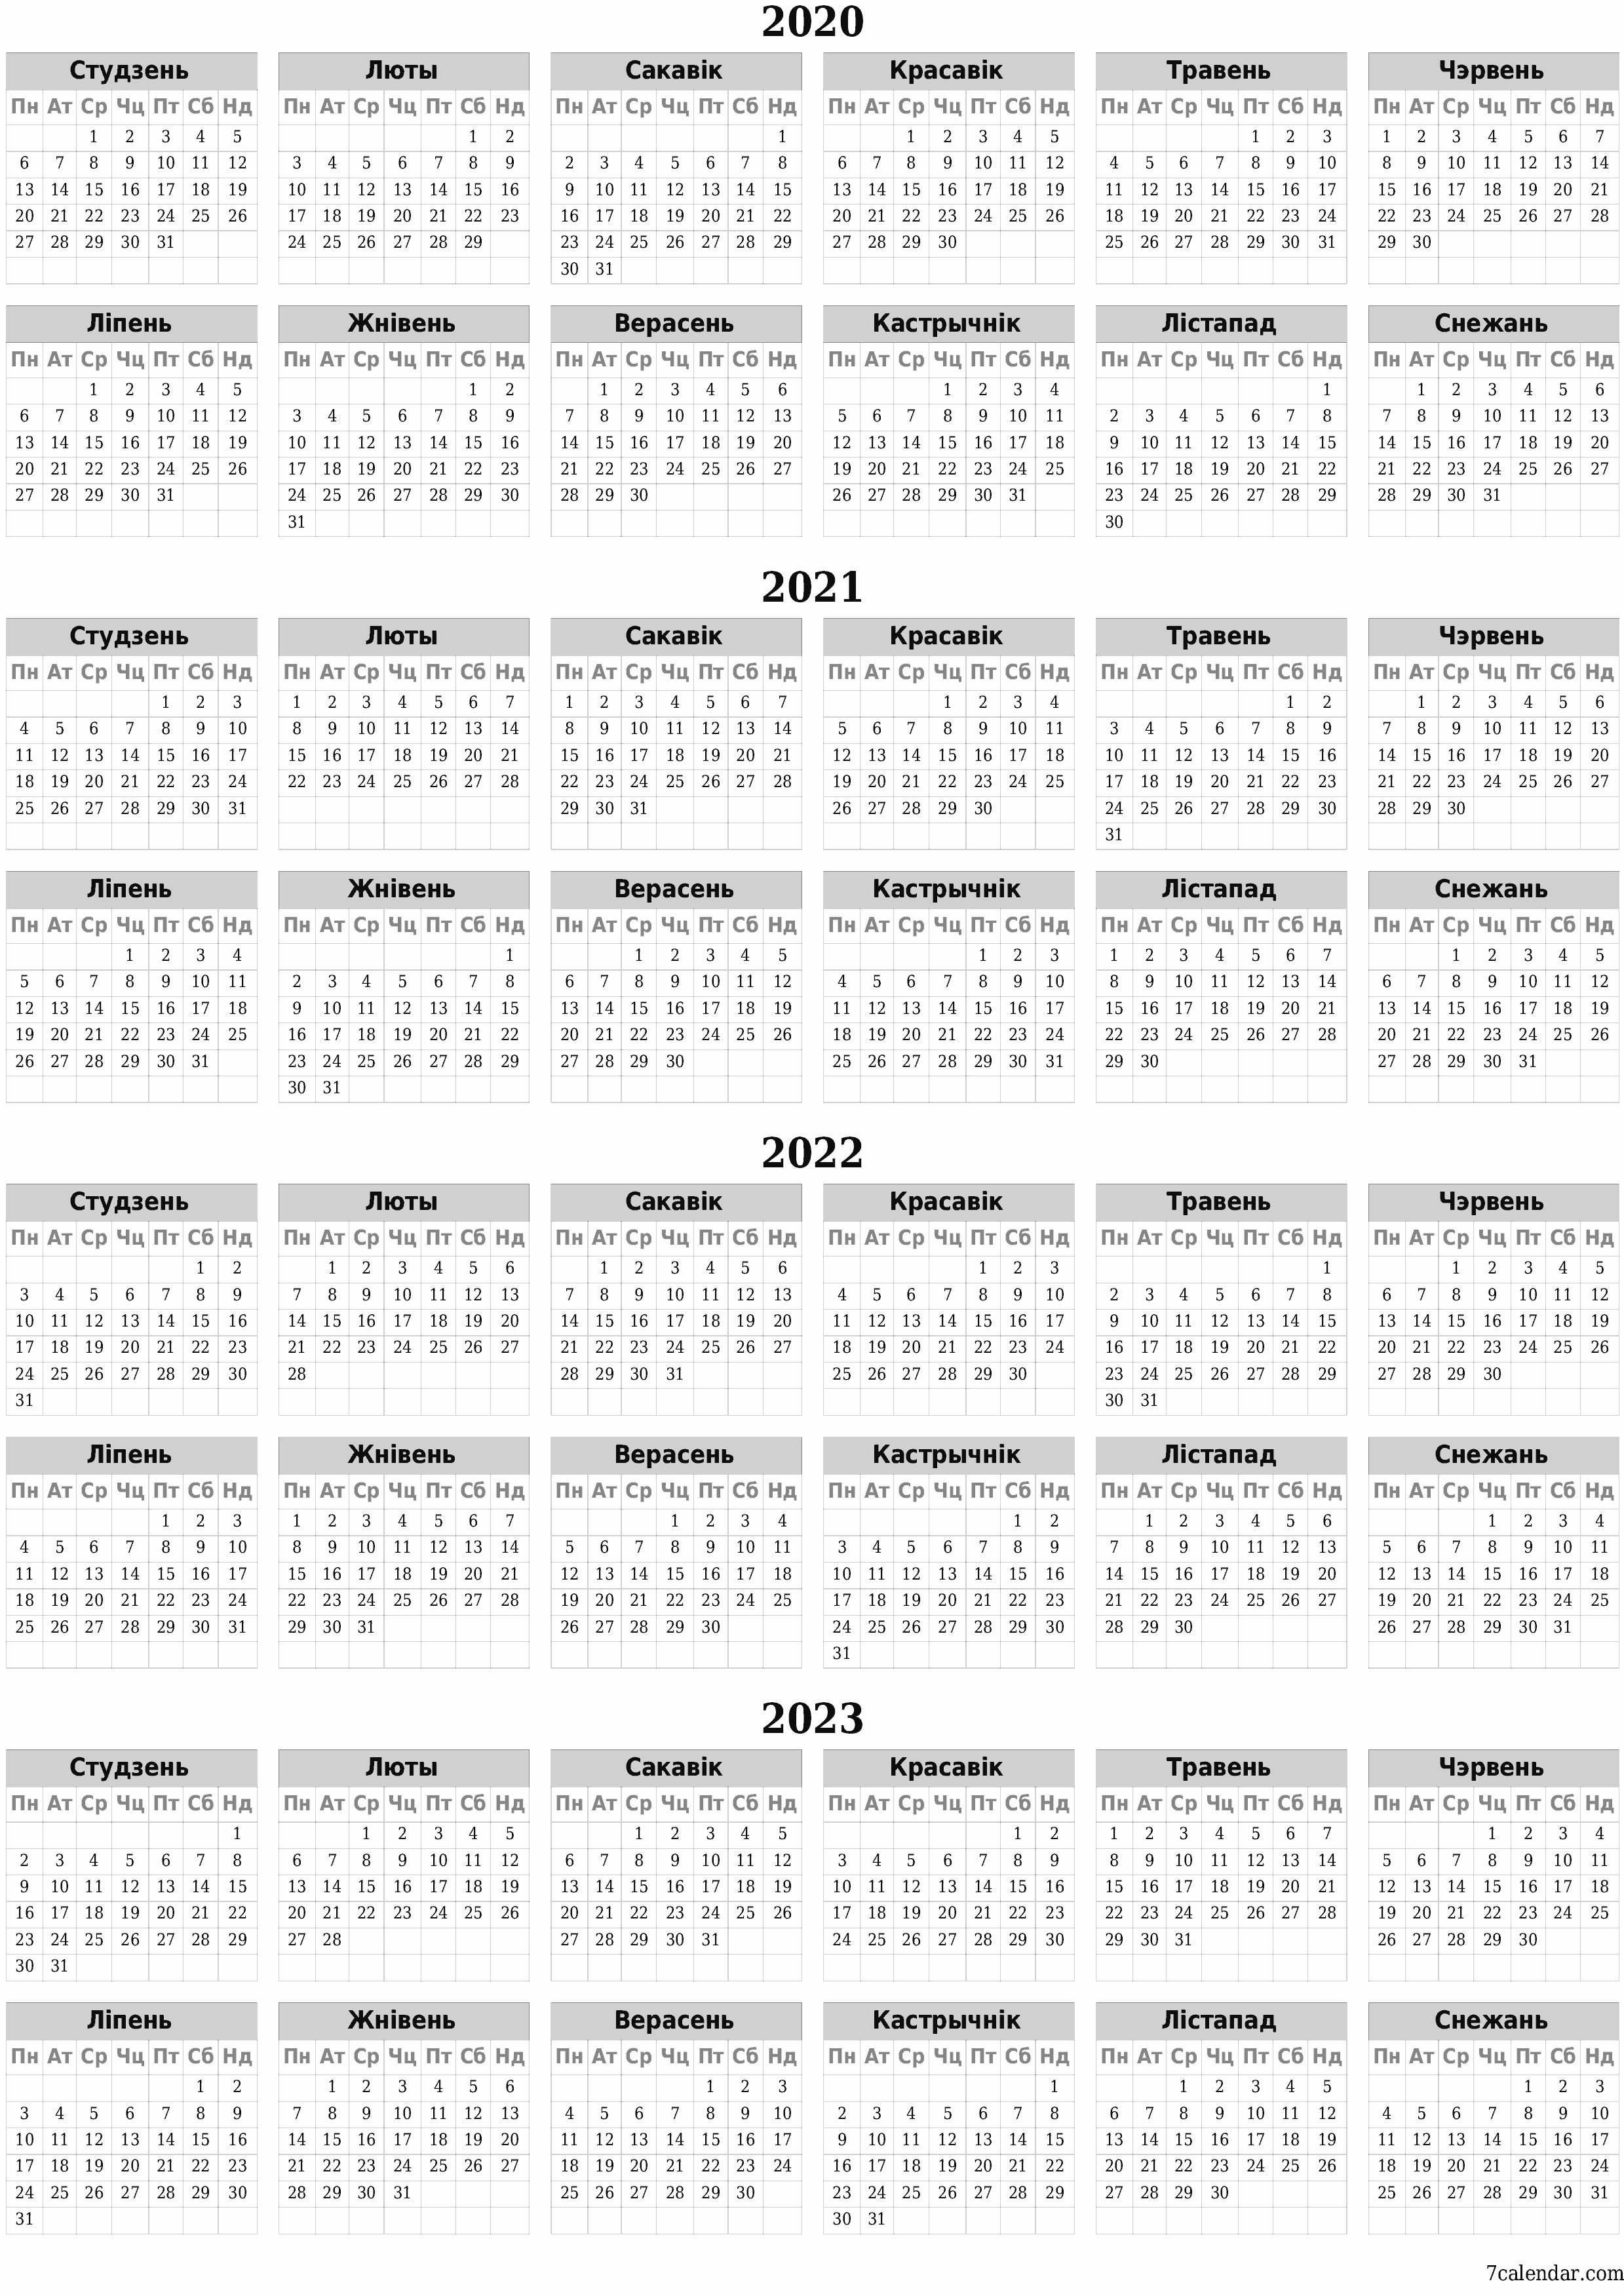  для друку насценны шаблон календара бясплатны вертыкальны Штогадовы каляндар Сакавік (Сак) 2020